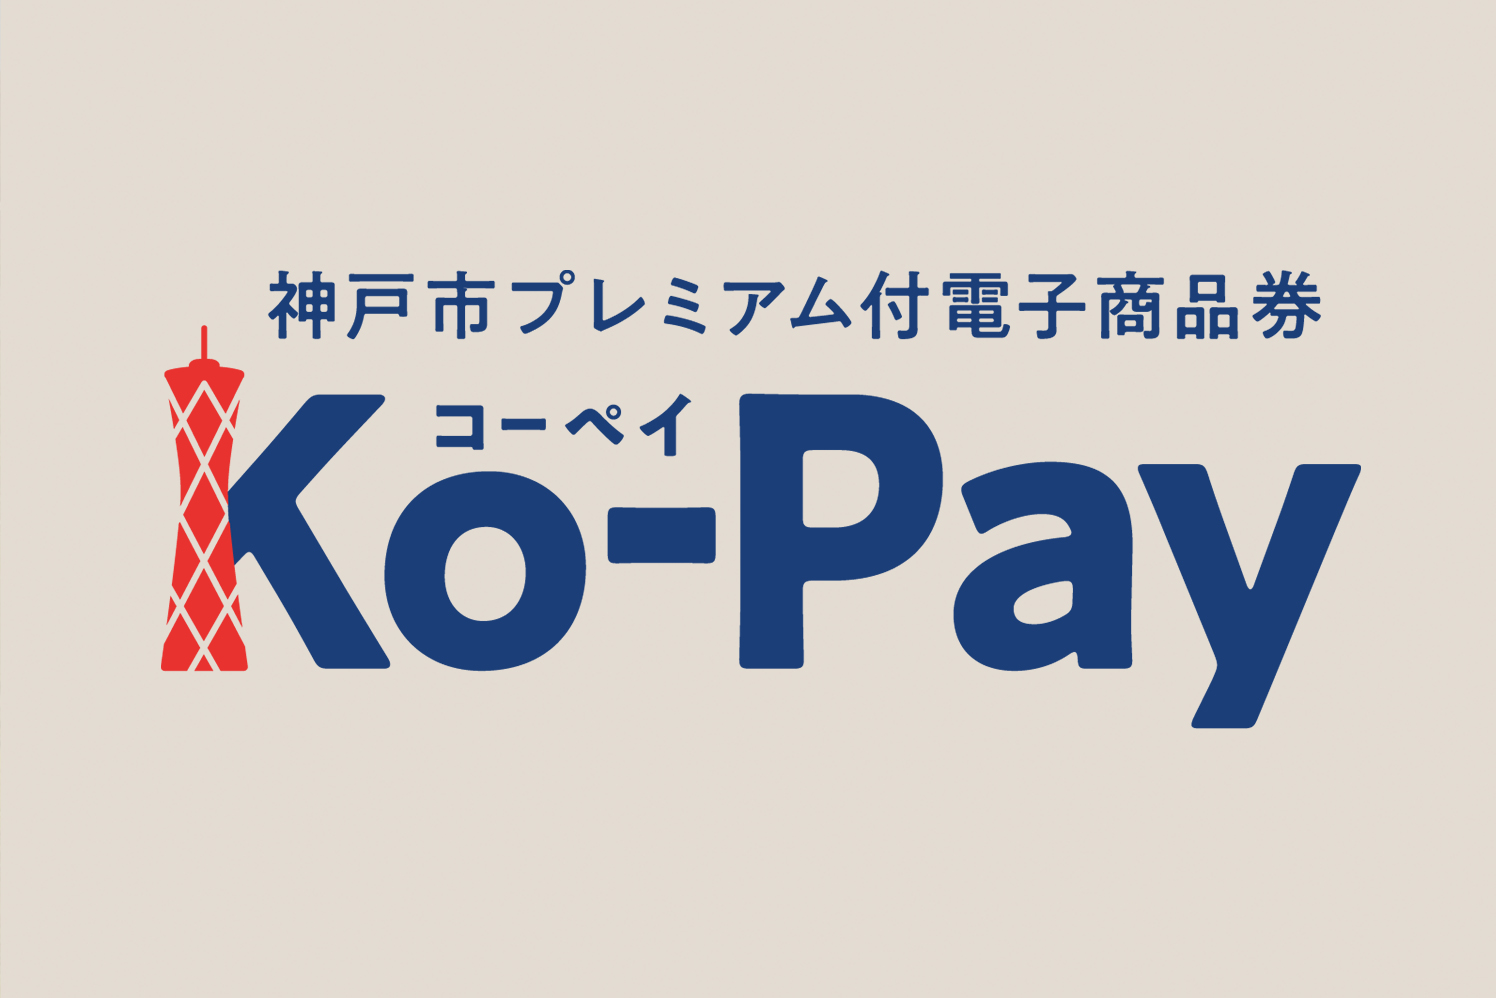 神戸市プレミアム付電子商品券「Ko-Pay」